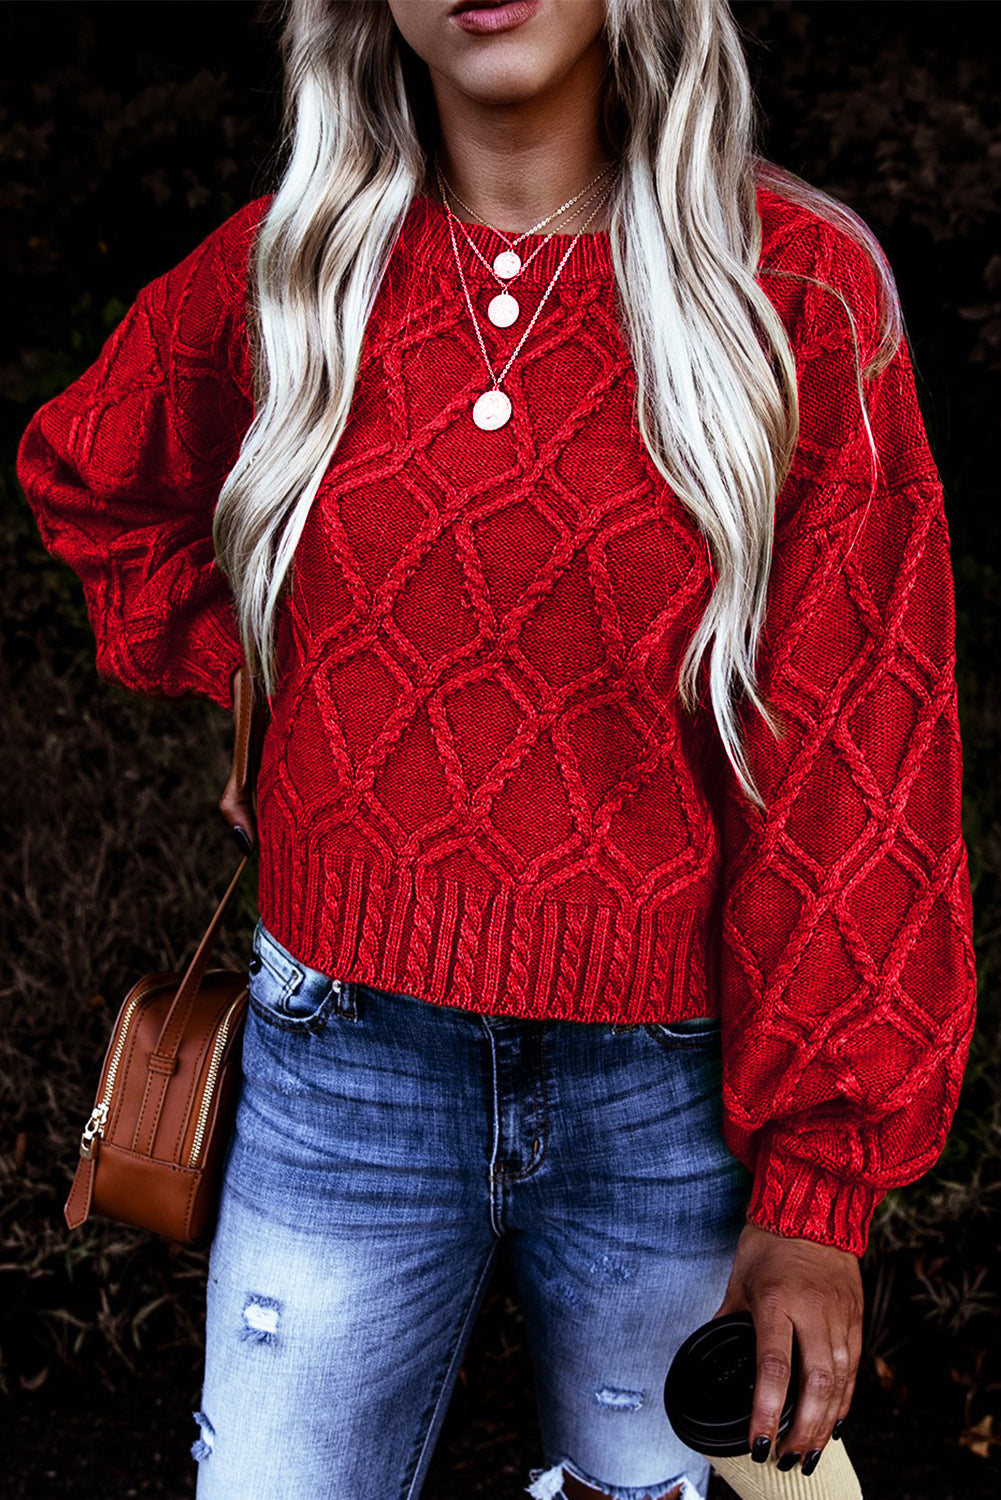 Ognjeno rdeč praznični debel pulover z teksturo